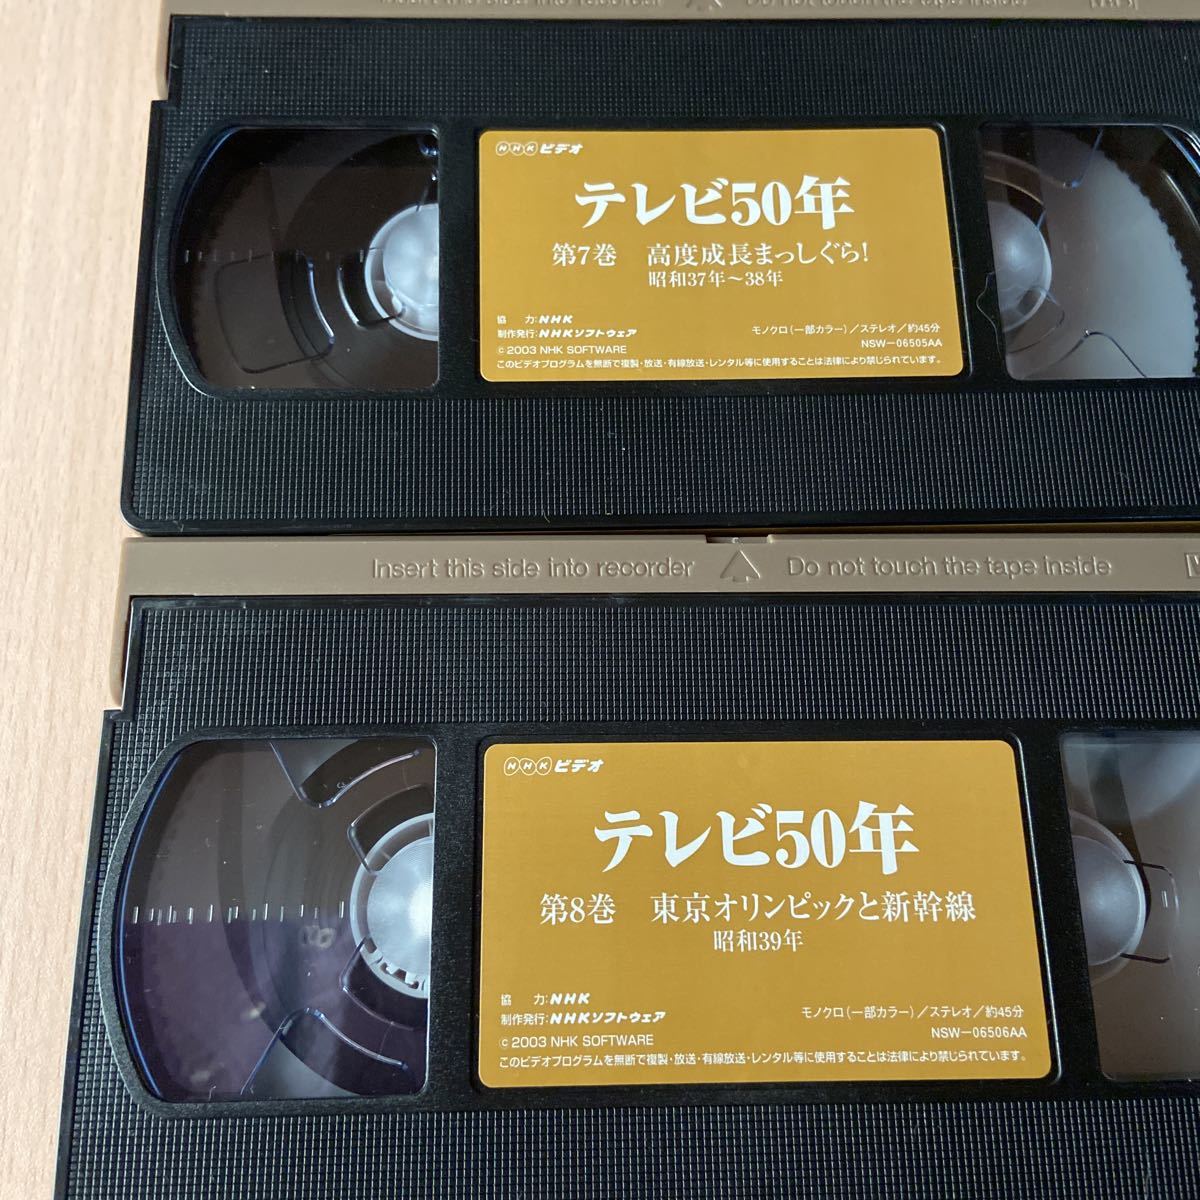 NHKテレビ50周年記念VHSビデオ「テレビ50年」5 6 7 8 9巻の5本セットで 昭和34～41年記録もの 皇太子ご成婚 東京オリンピック他